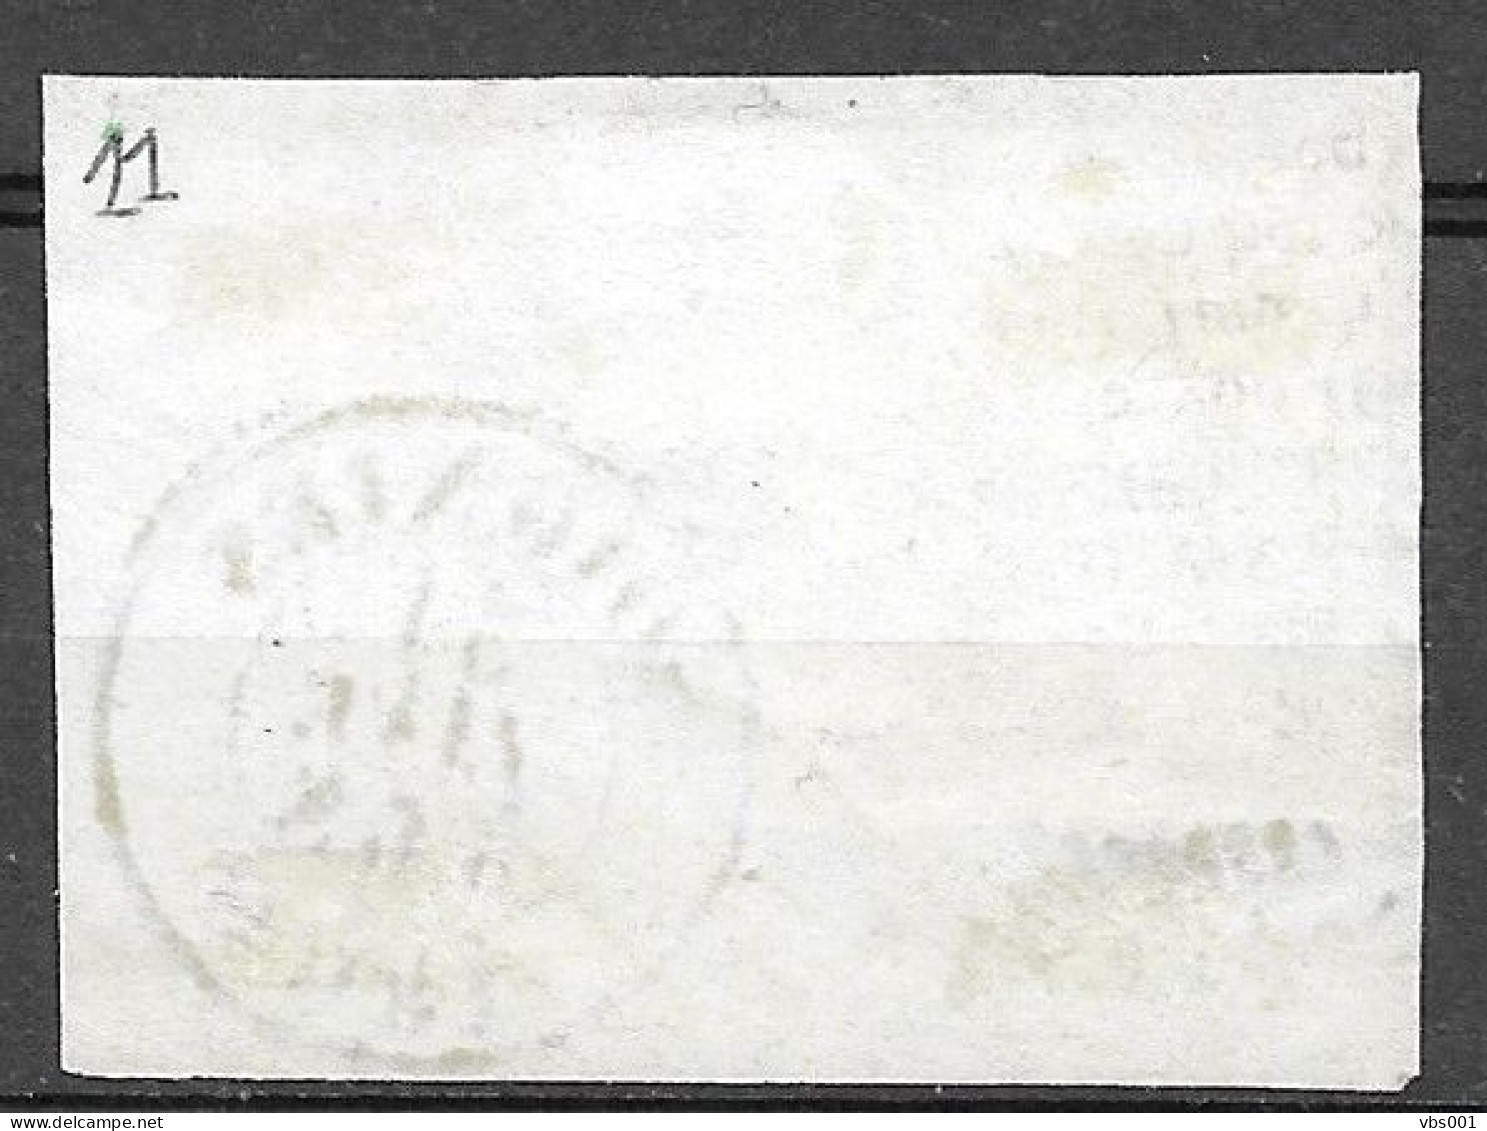 OBP11A Op Fragment, Met 4 Randen En Bladboord, Met Balkstempel P108 Soignies + Vertrekstempel (zie Scans) - 1858-1862 Médaillons (9/12)